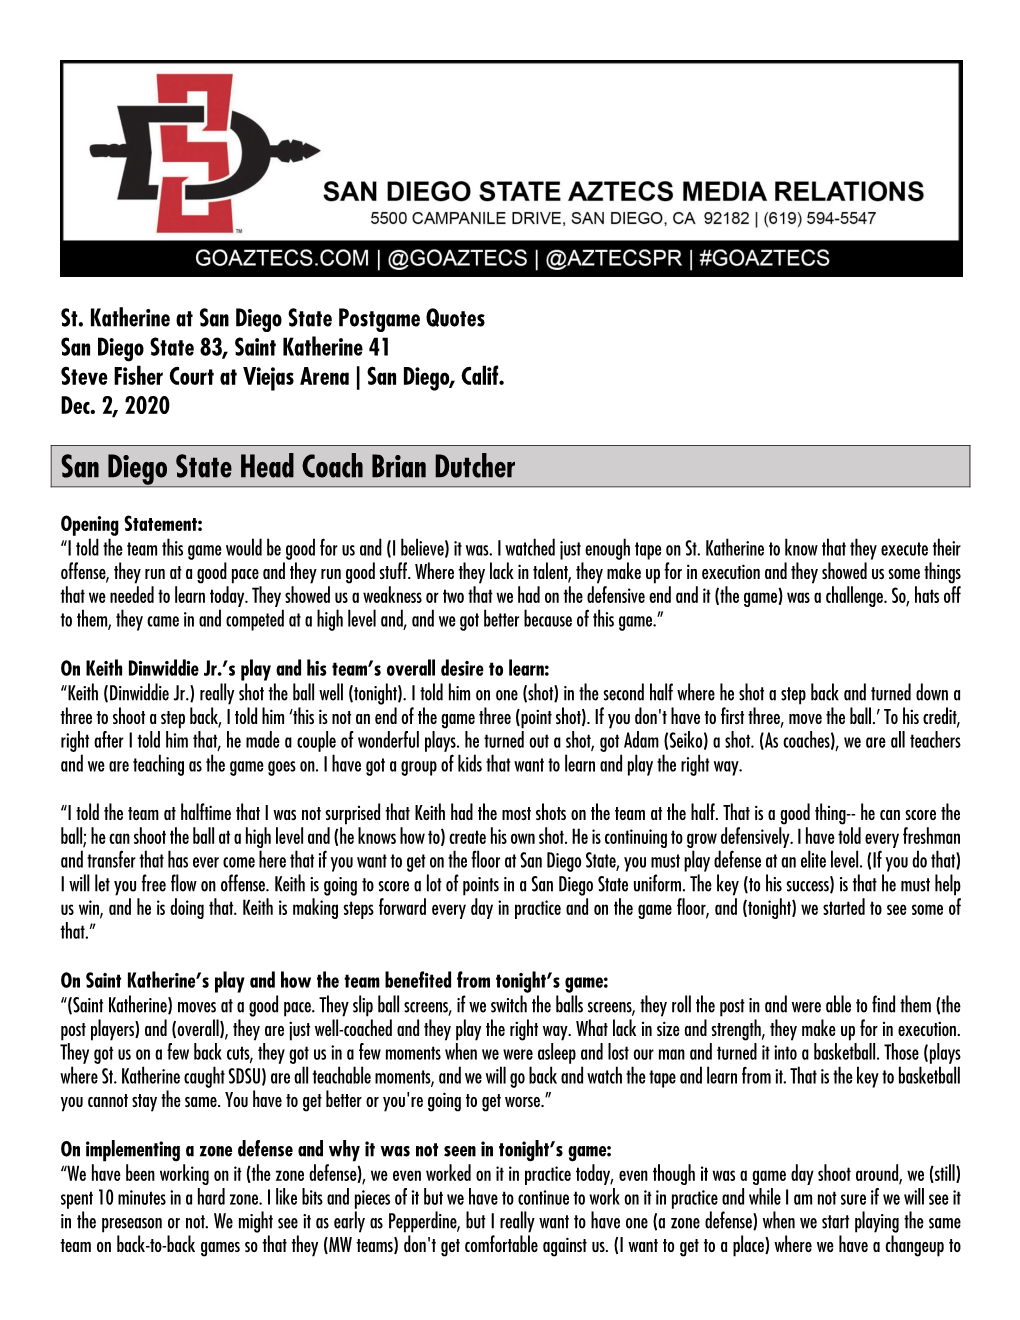 San Diego State Head Coach Brian Dutcher